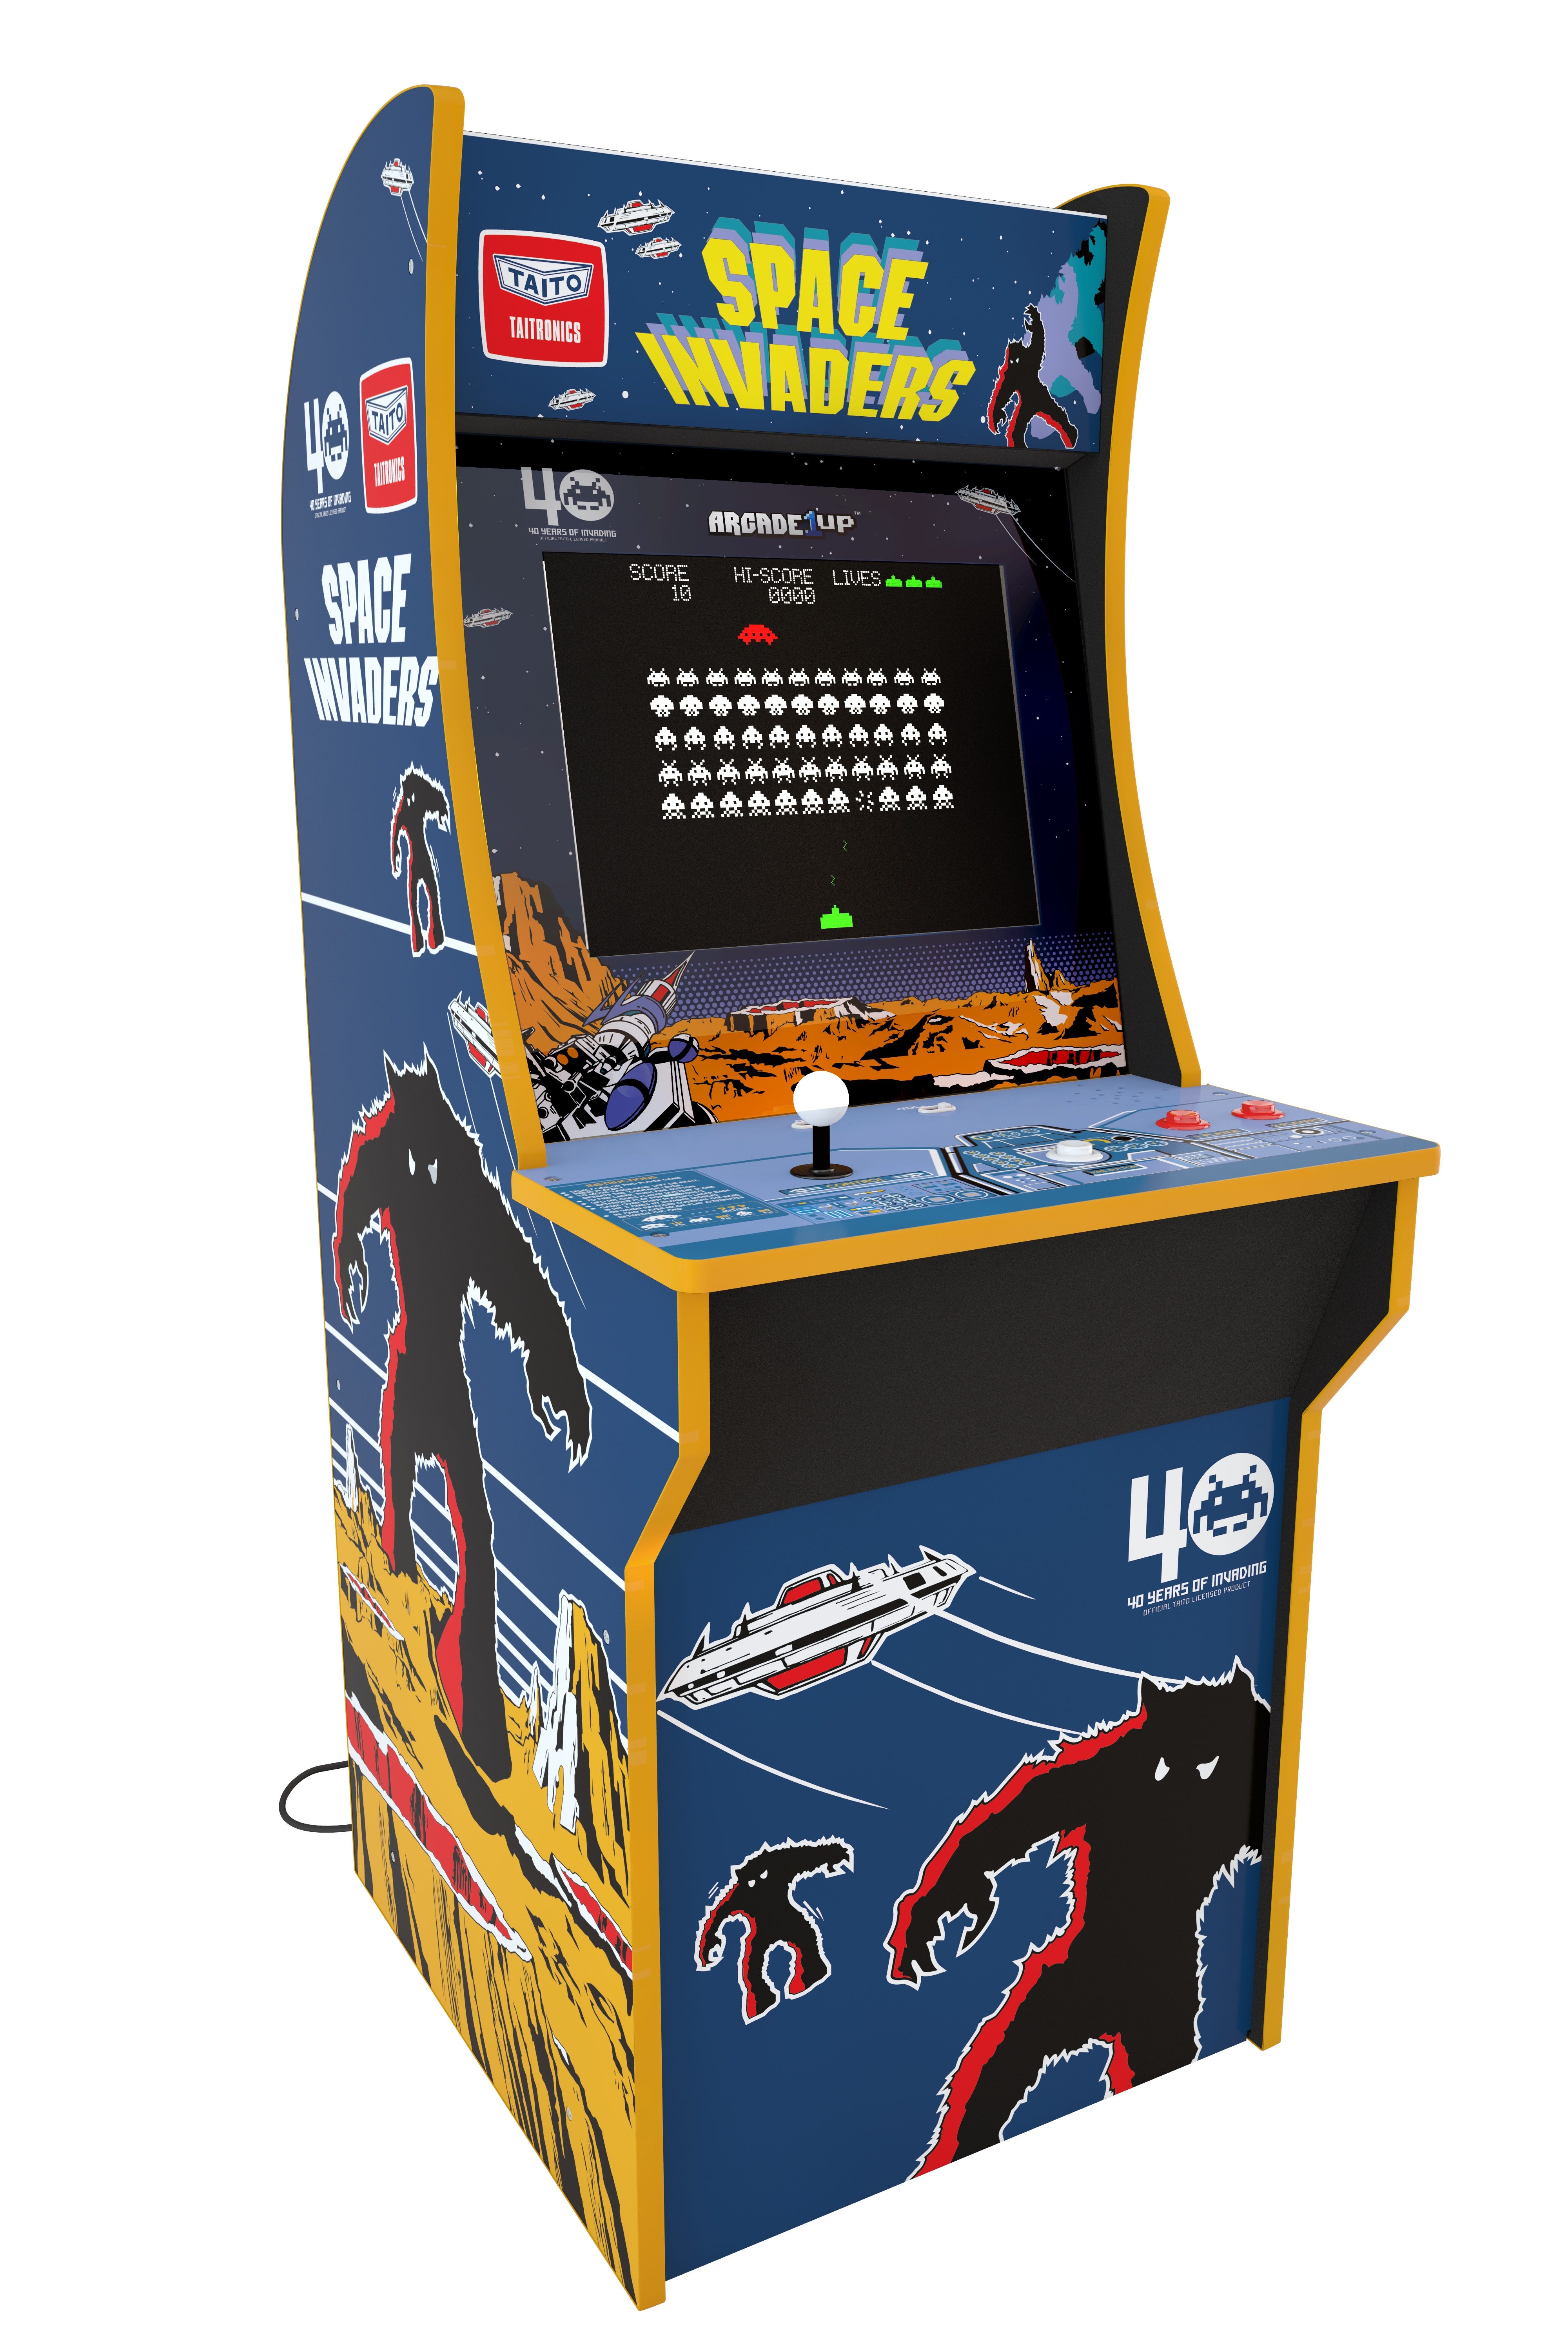 retro arcade system